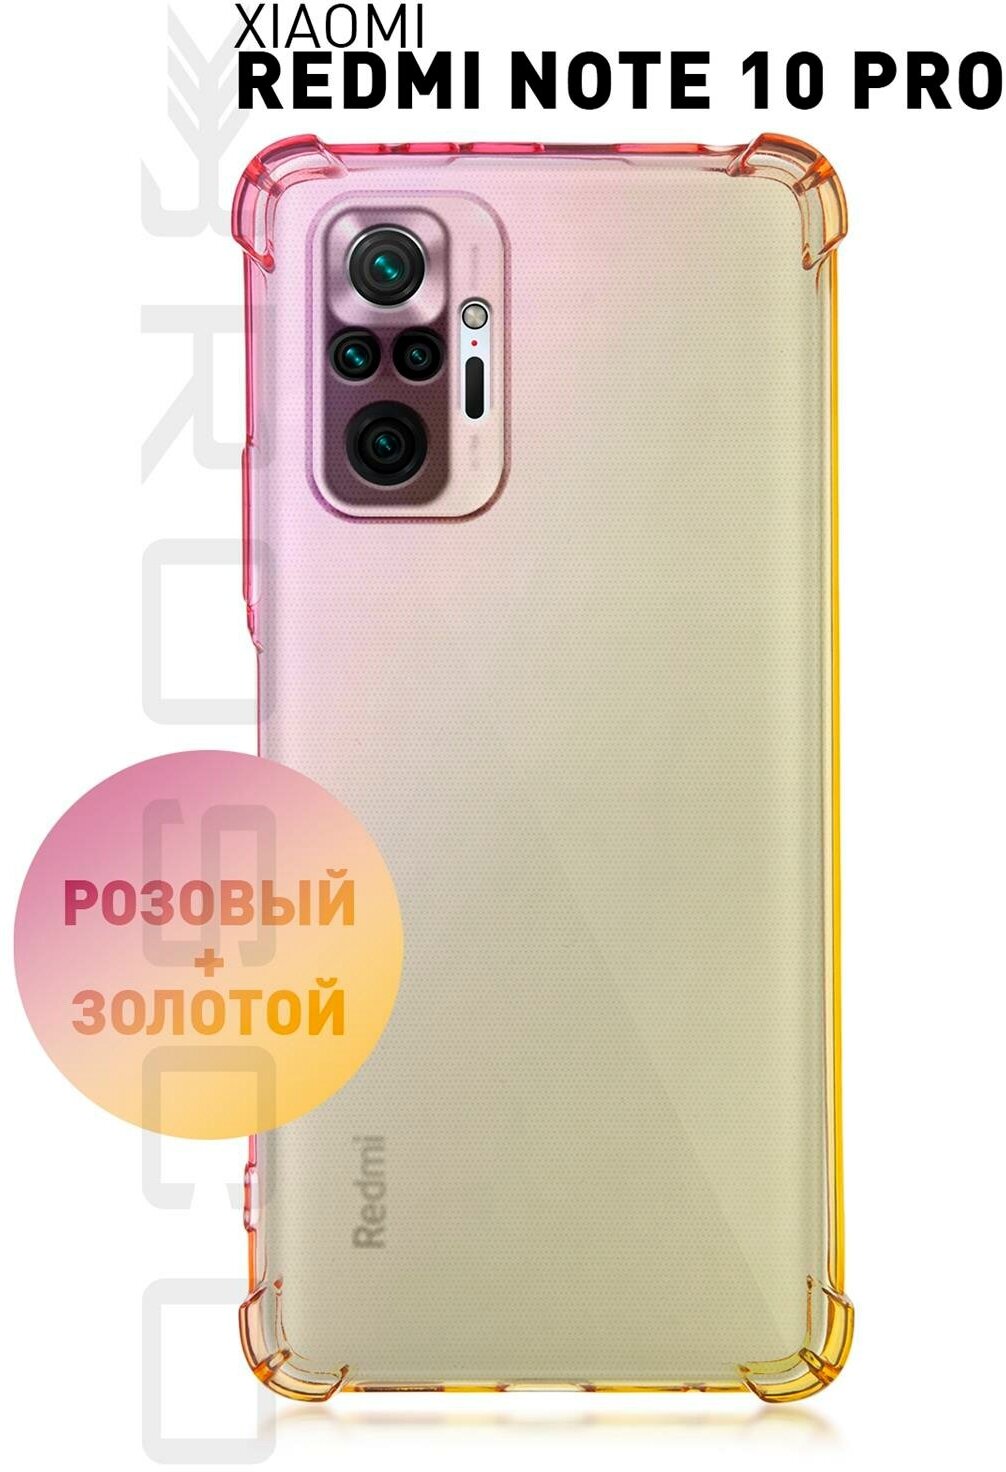 Противоударный чехол ROSCO для Xiaomi Redmi Note 10 Pro (Сяоми Редми Ноут 10 Про) силиконовый усиленный защита камер прозрачный розовый-золотой